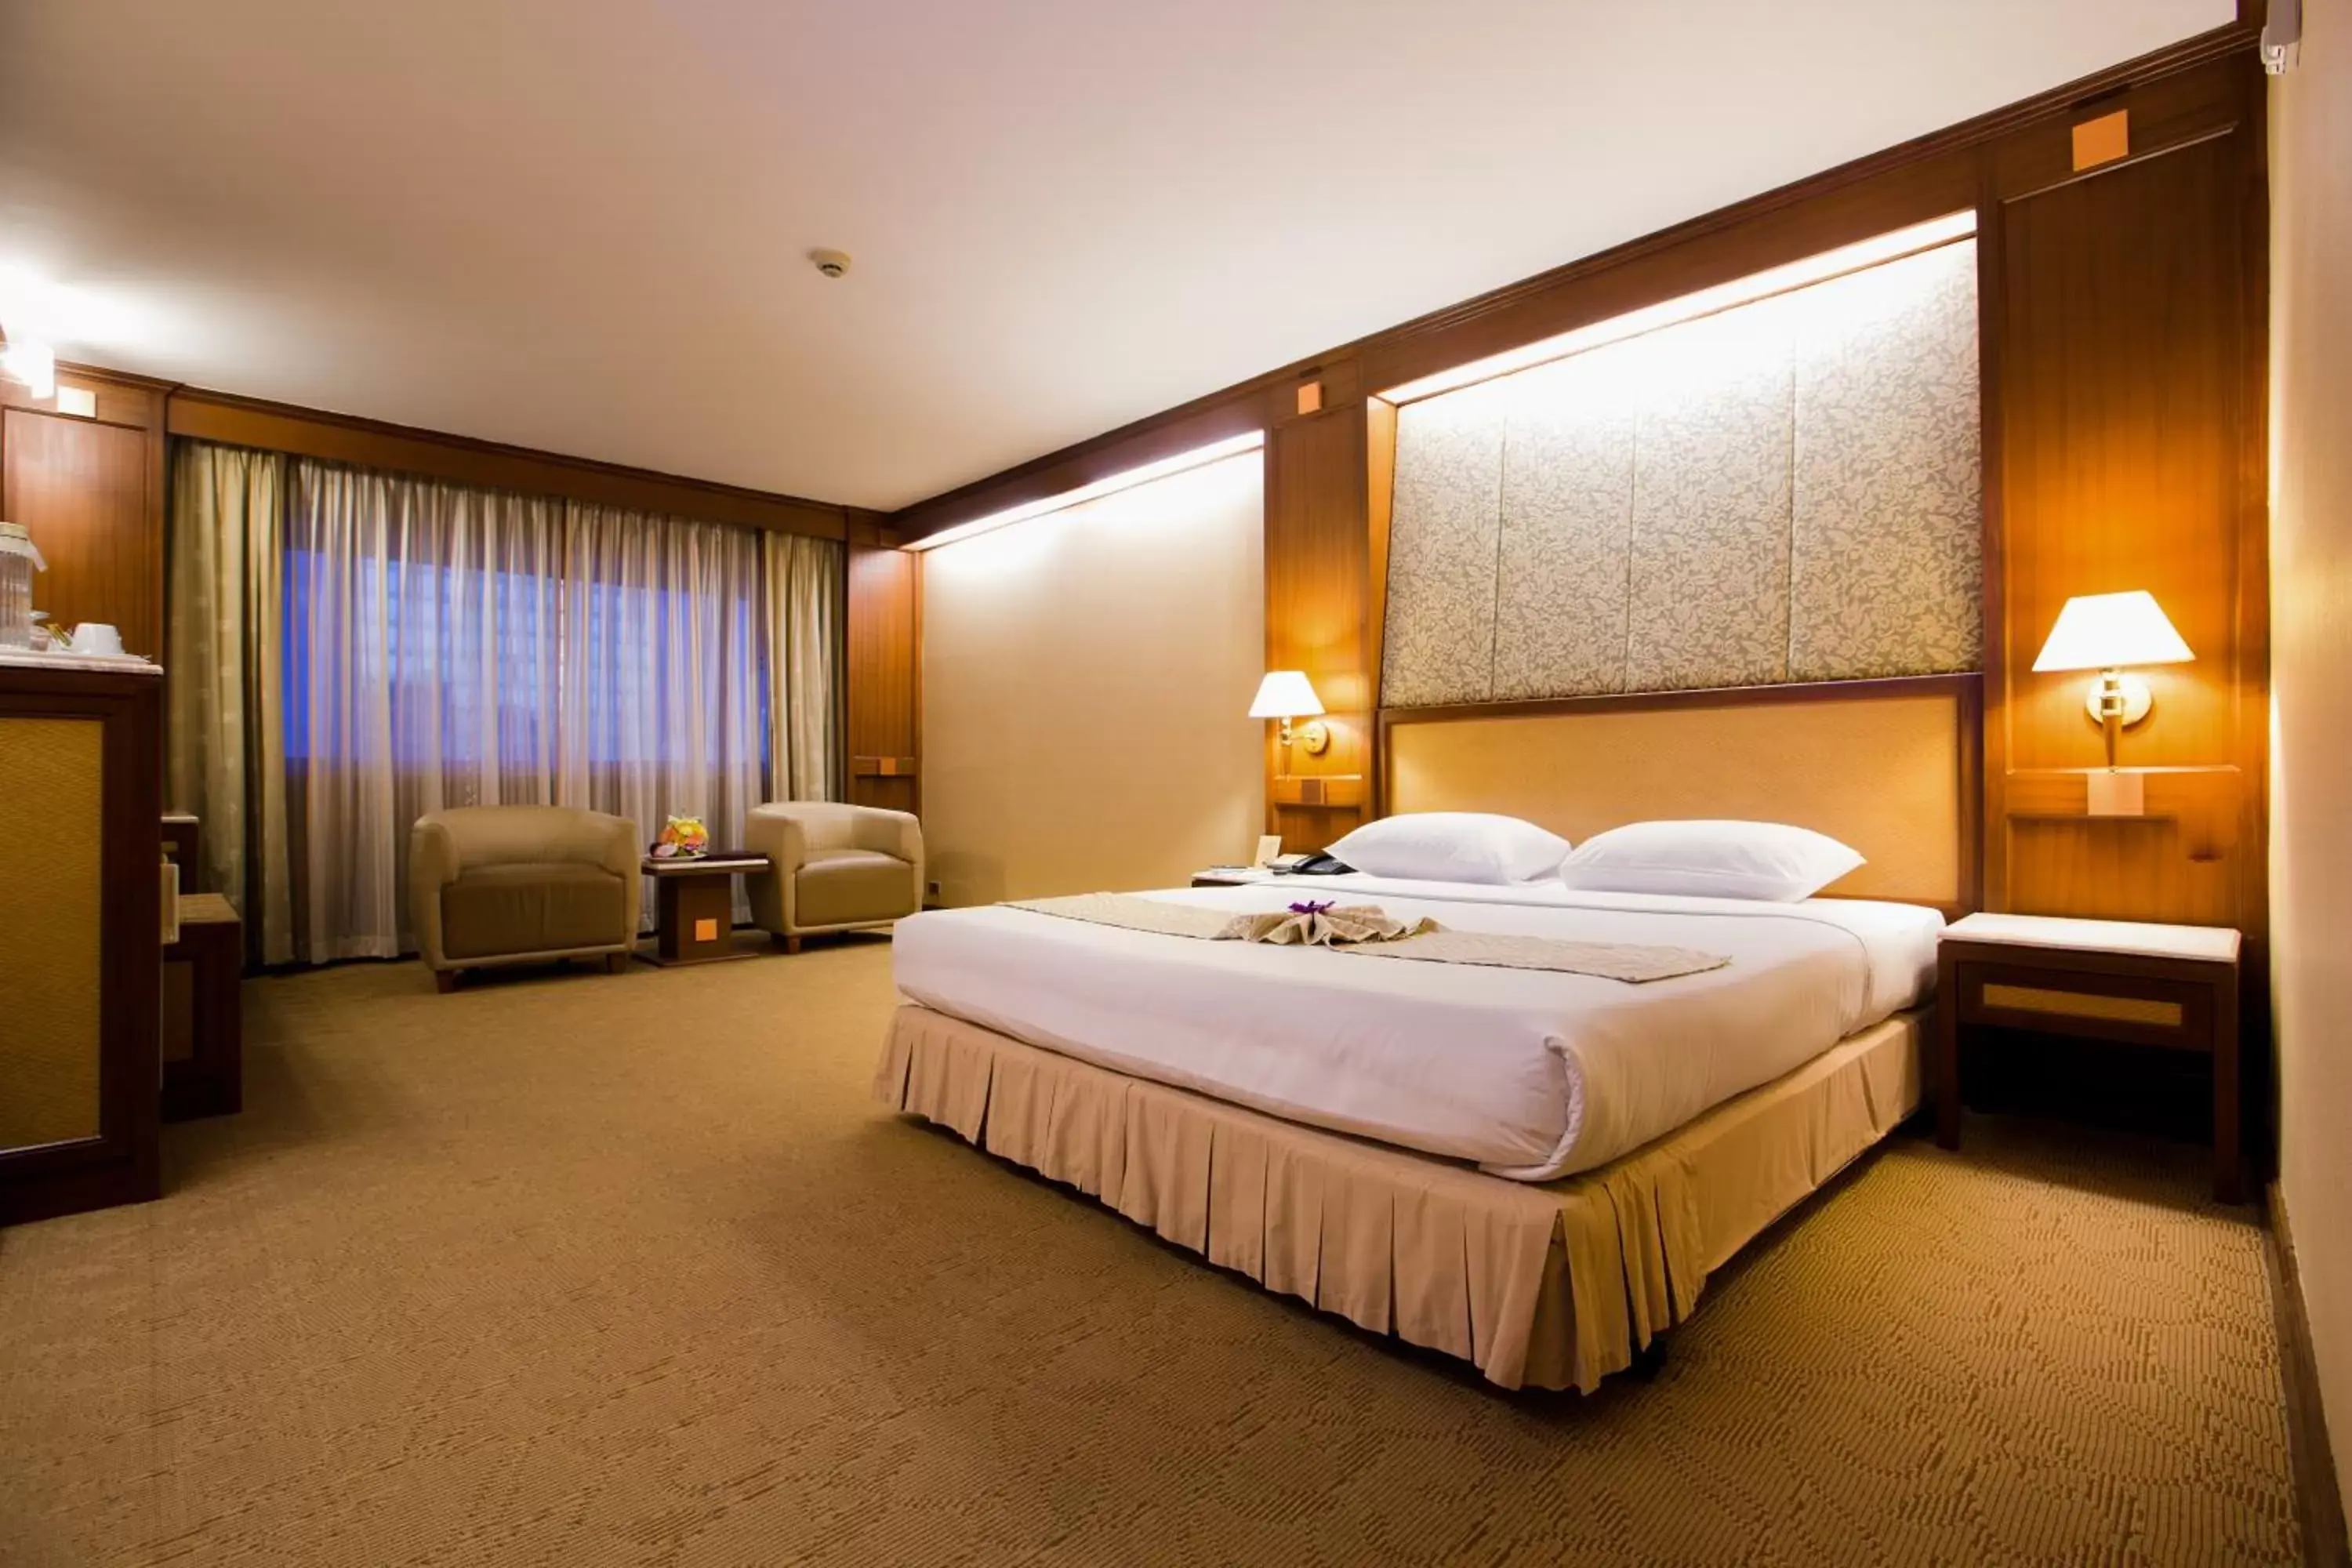 Bedroom, Bed in Asia Hotel Bangkok